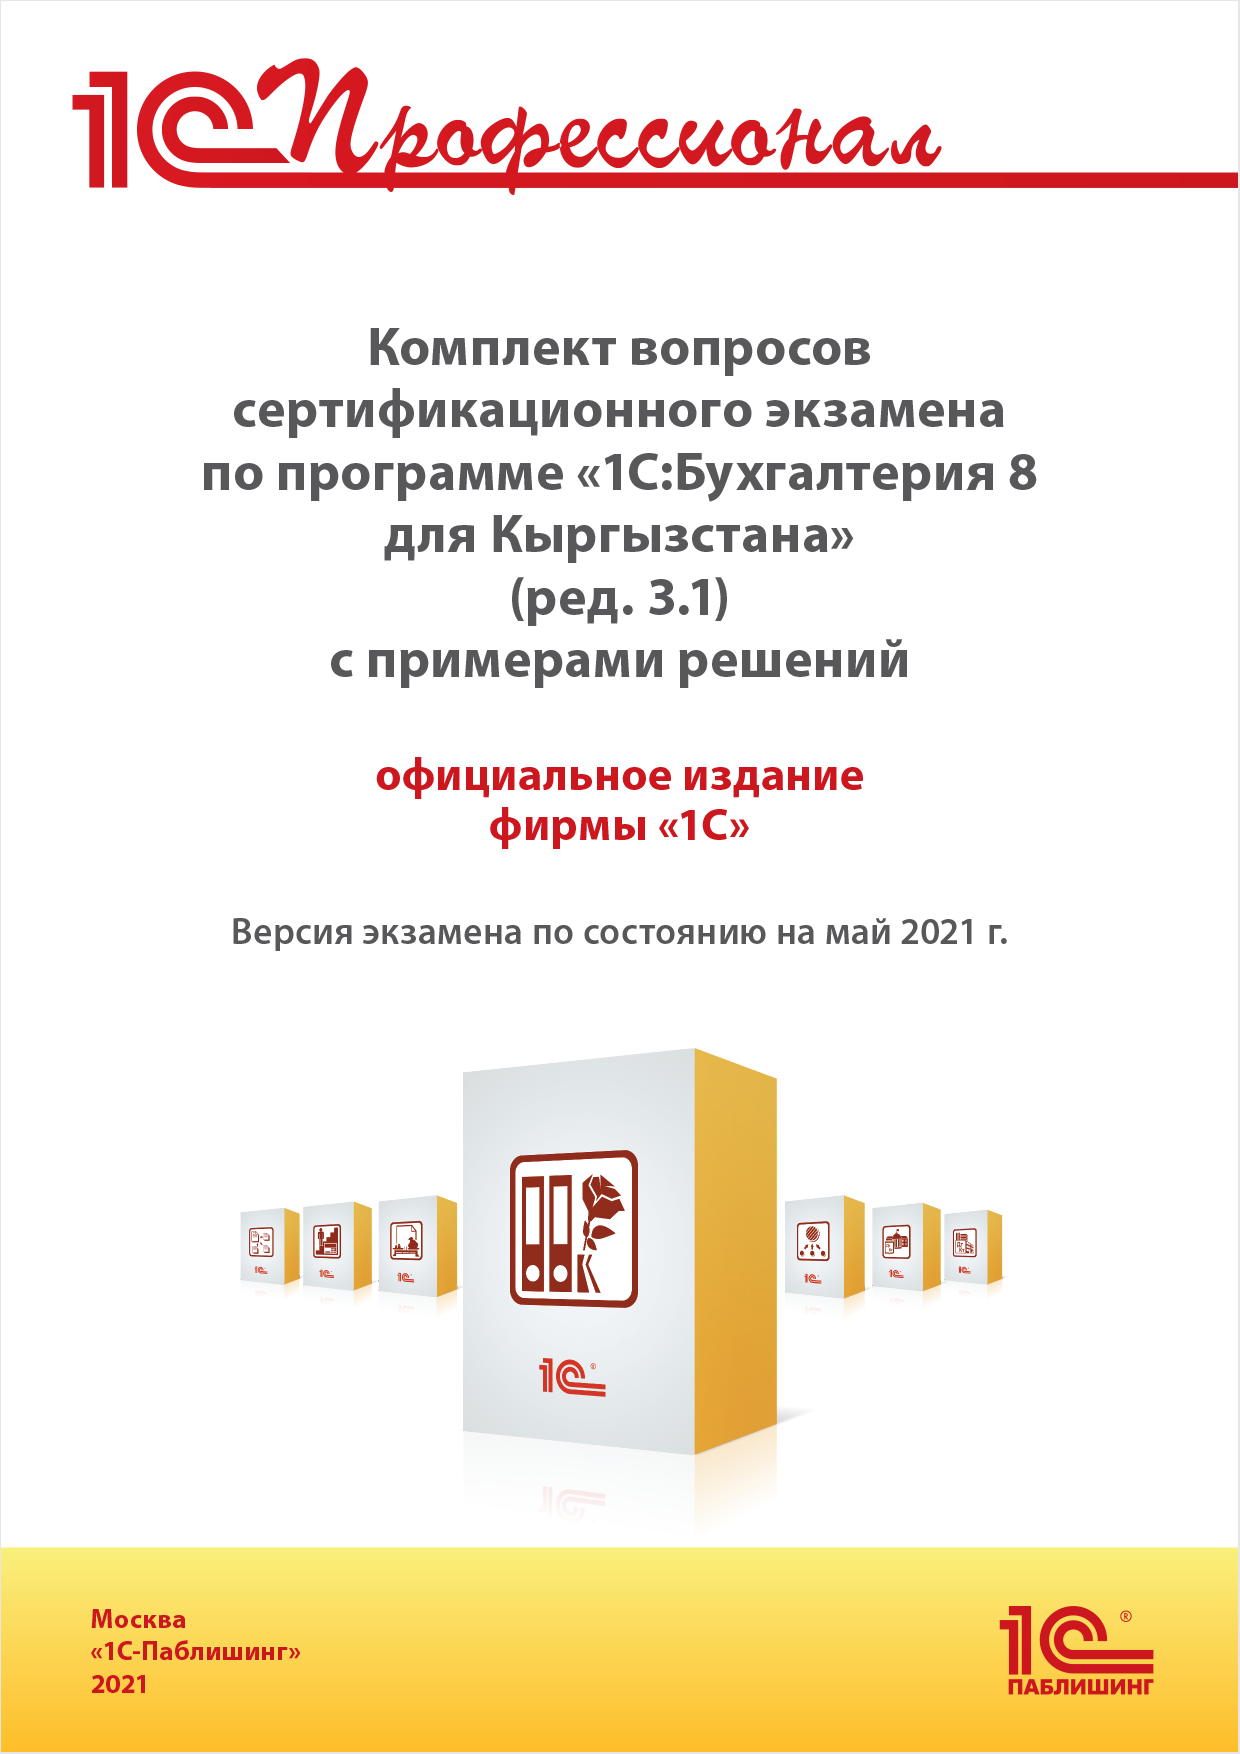 Комплект вопросов сертификационного экзамена «1С:Профессионал» по программе «1С:Бухгалтерия 8 для Кыргызстана» (ред. 3.1) с примерами решений [цифровая версия] (Цифровая версия) от 1С Интерес